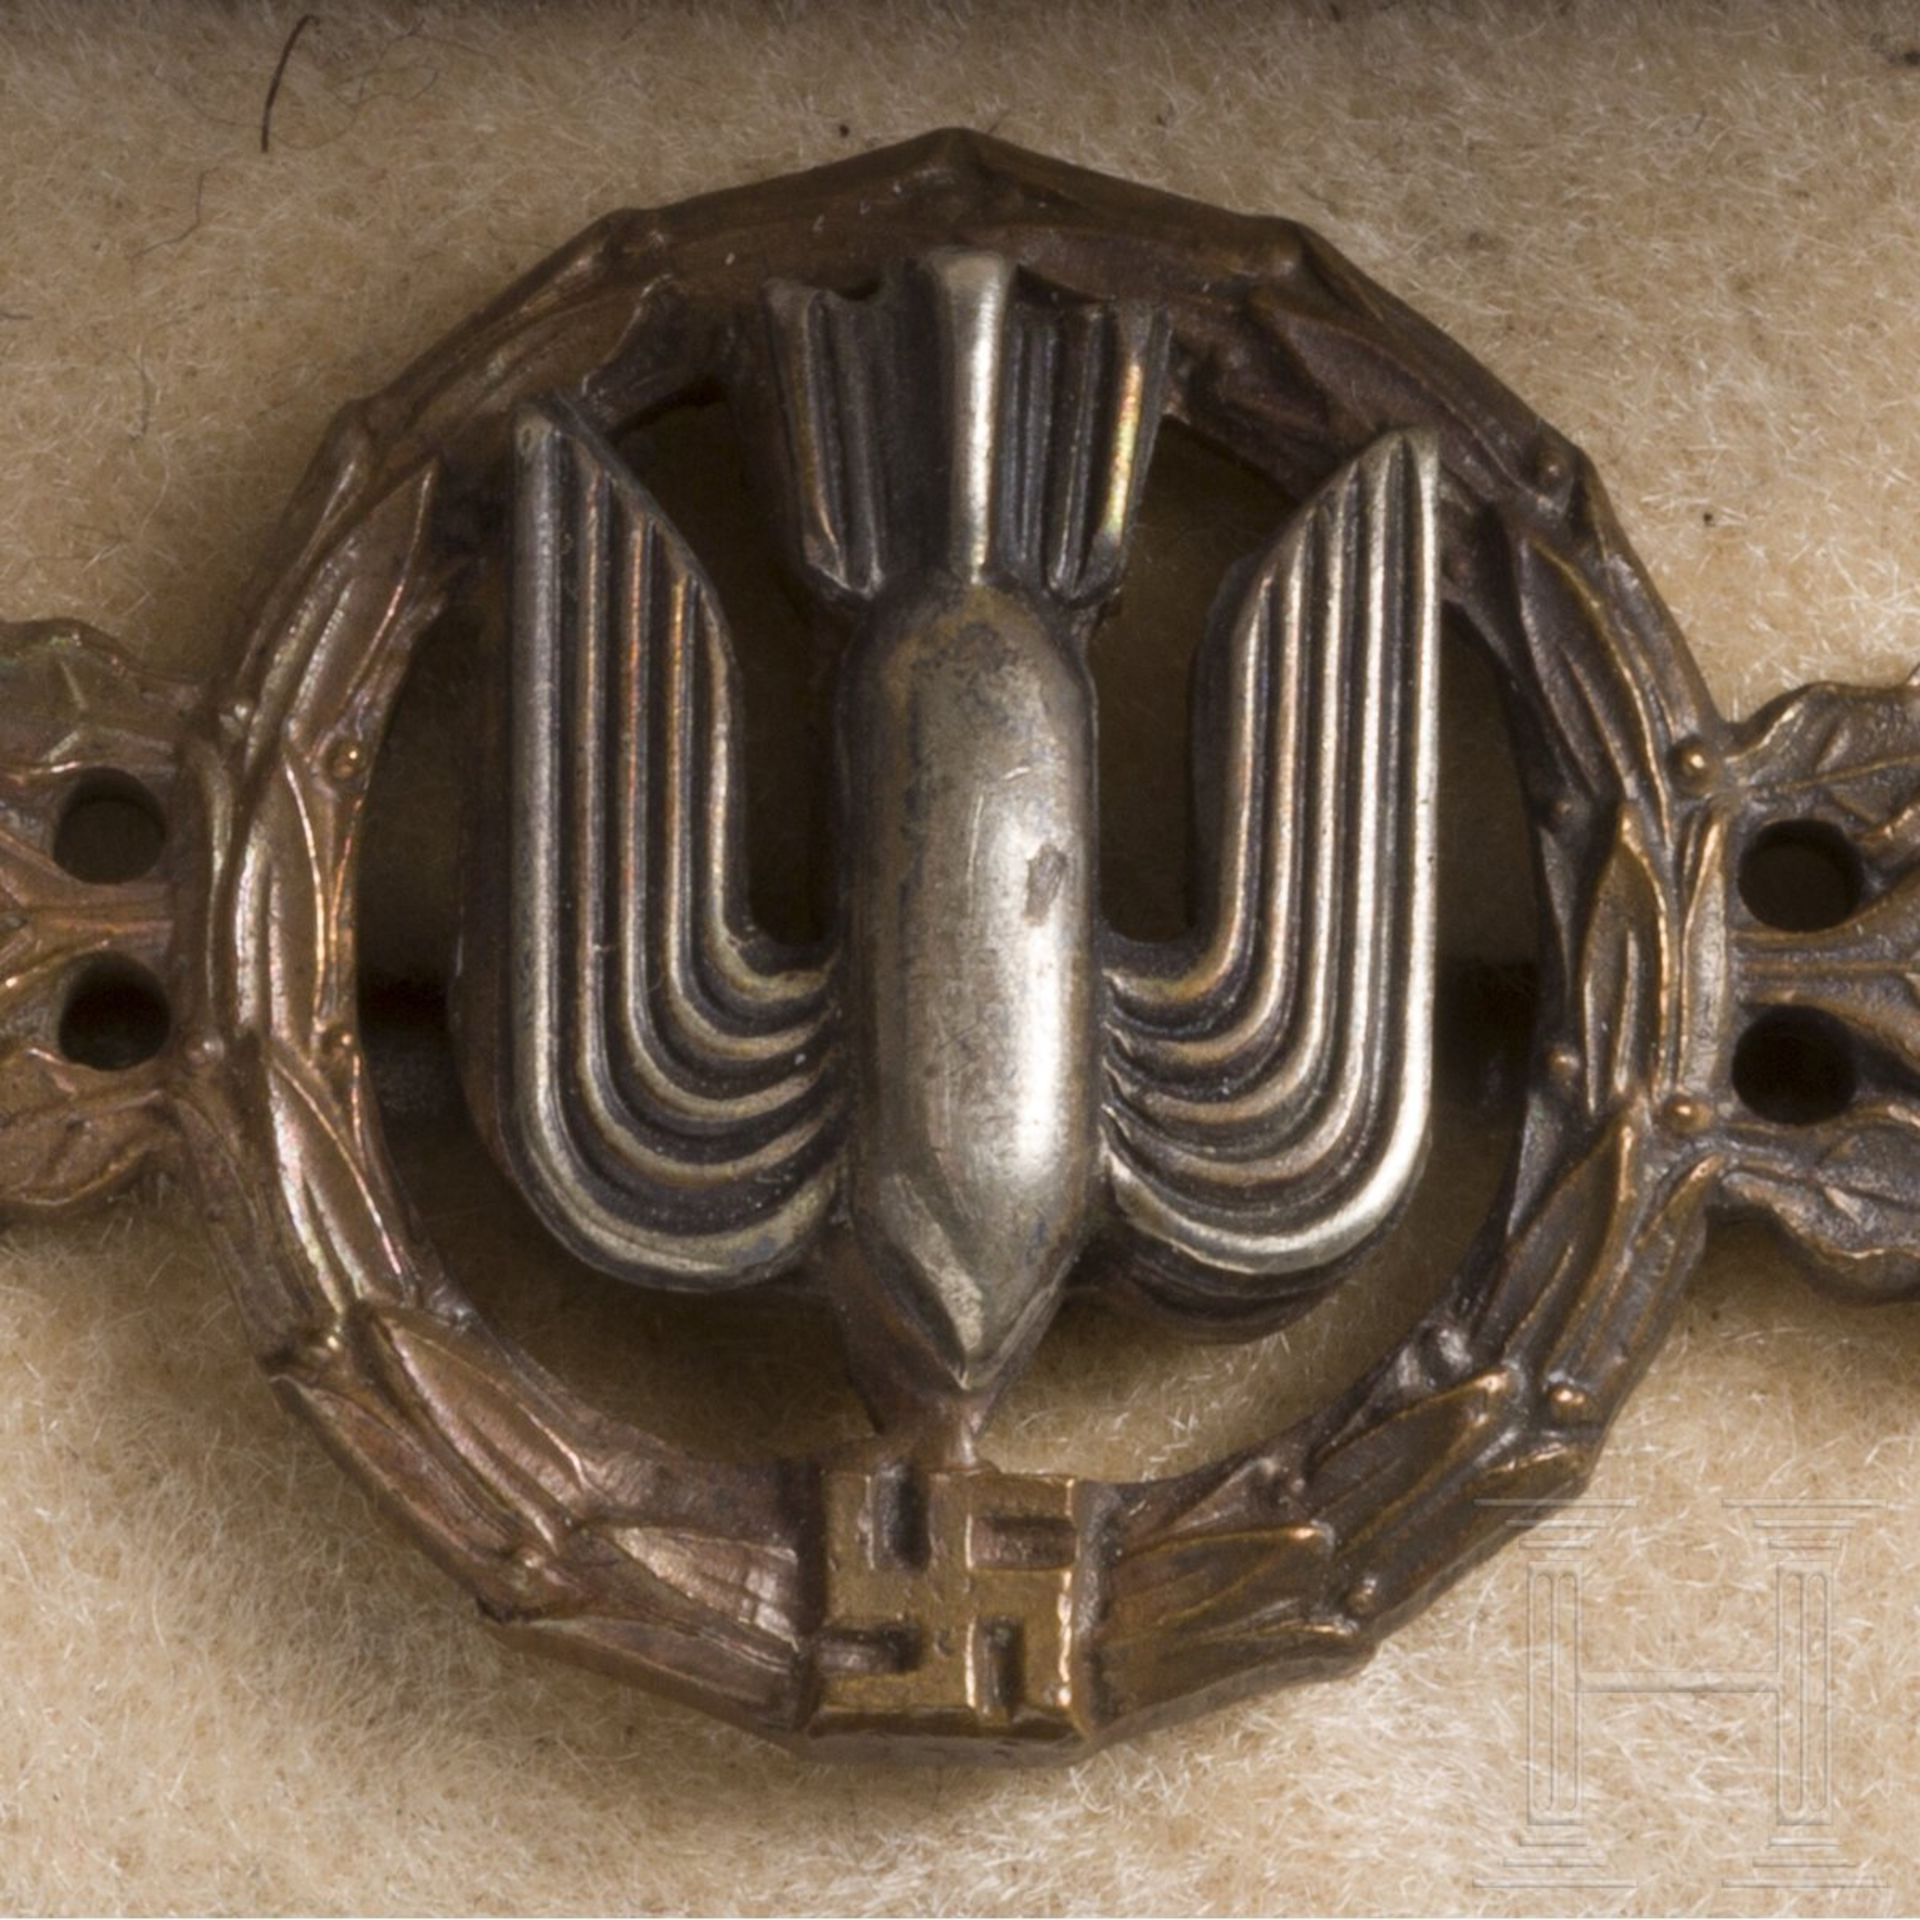 Frontflugspange für Kampf- und Sturzkampfflieger in Bronze im Etui - Image 4 of 4